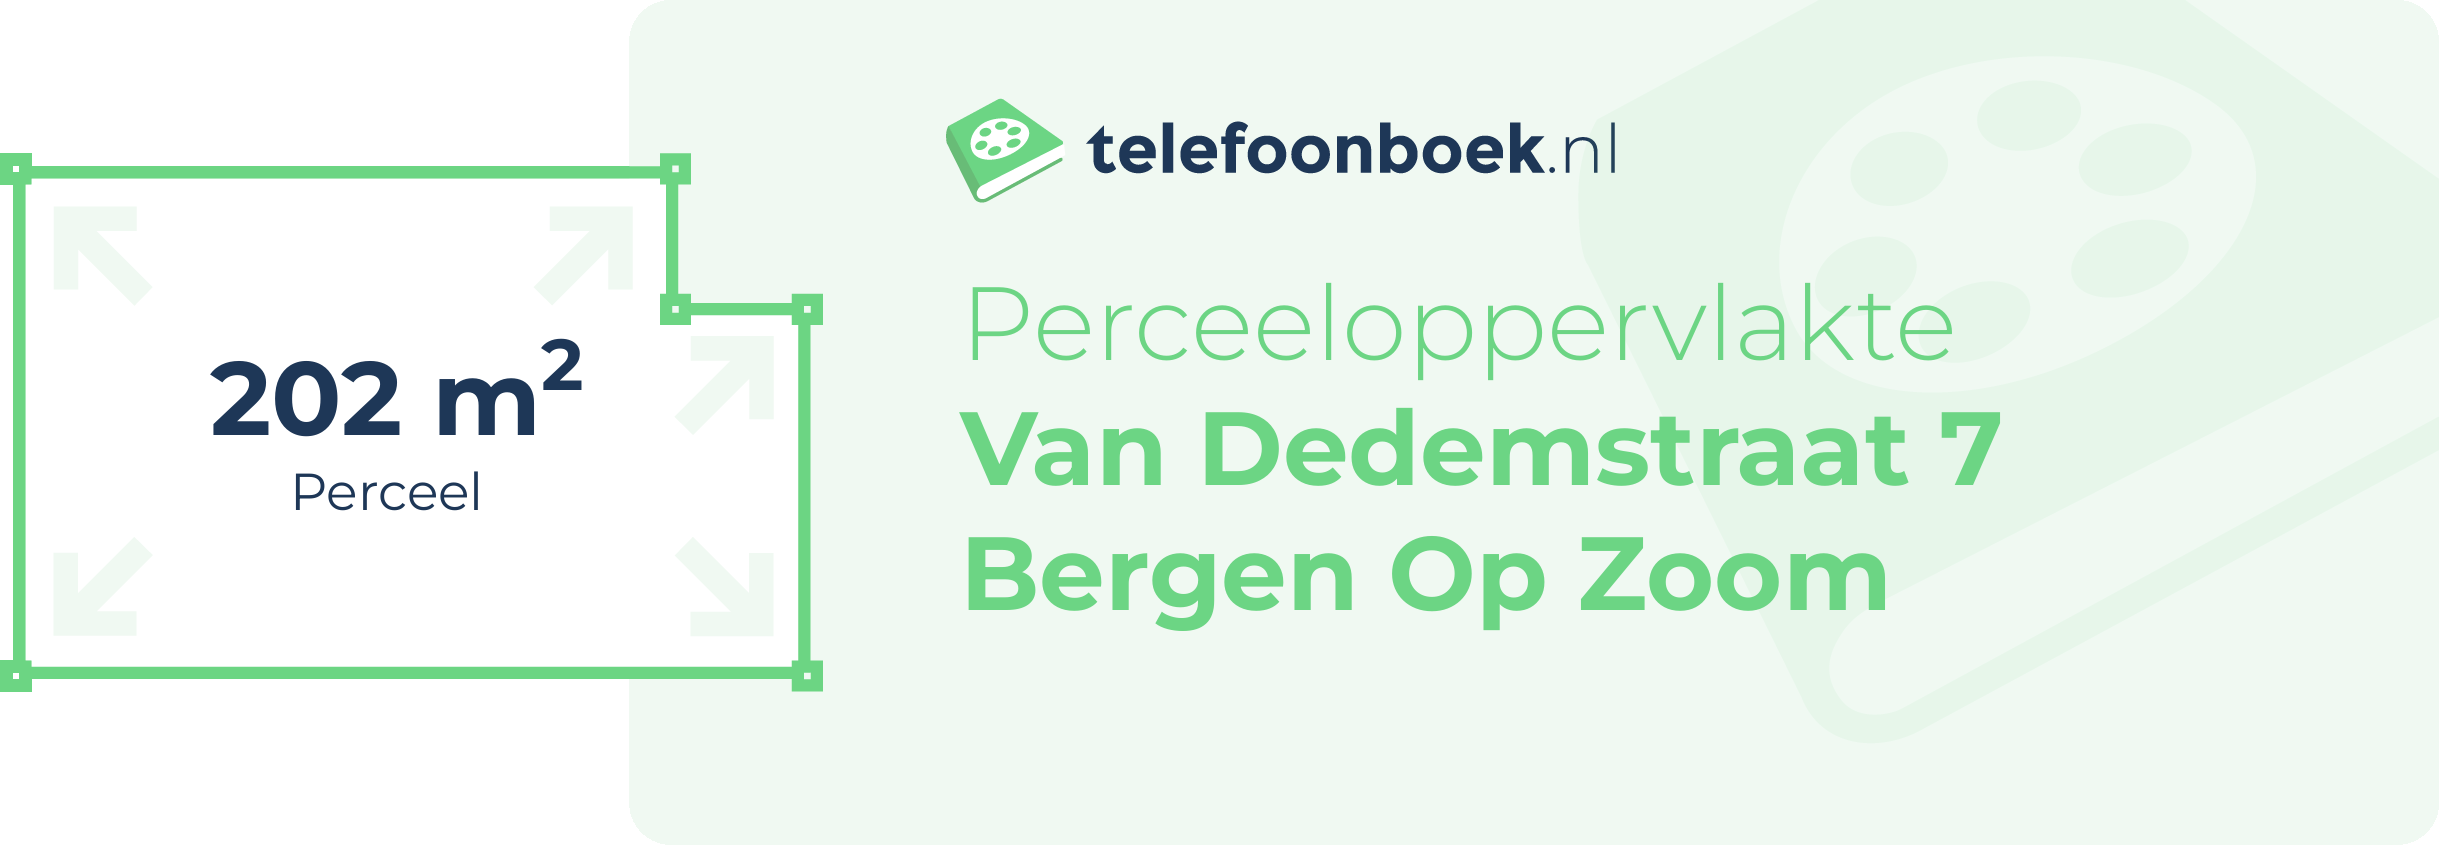 Perceeloppervlakte Van Dedemstraat 7 Bergen Op Zoom